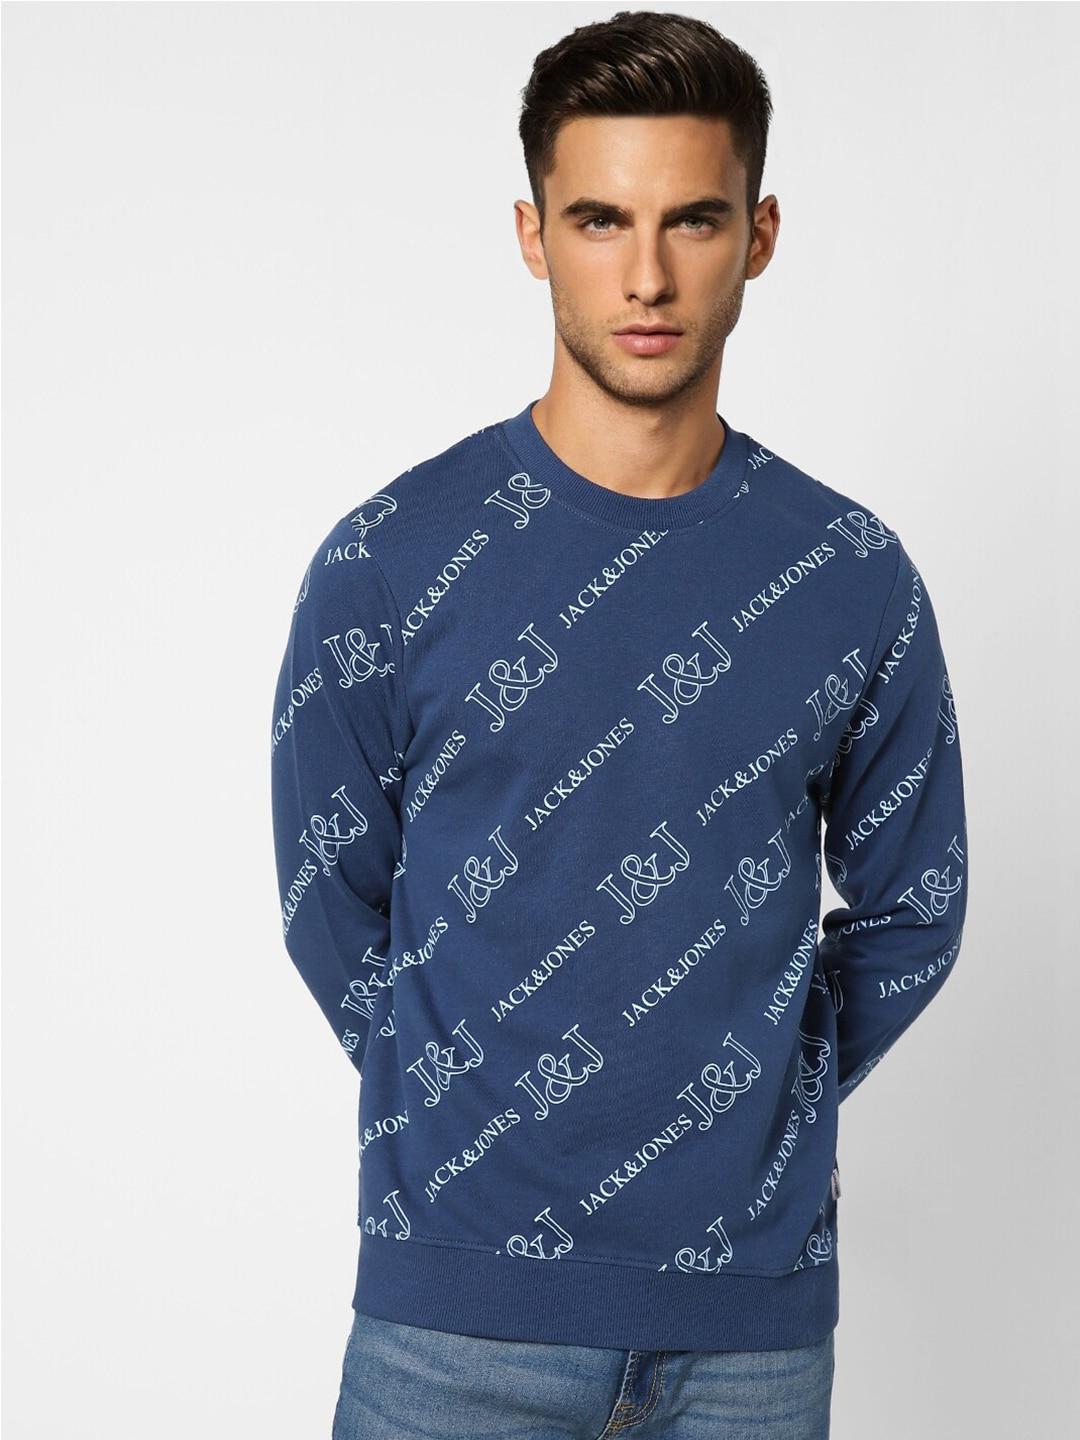 Jack & Jones Men Blue Printed Cotton Sweatshirt